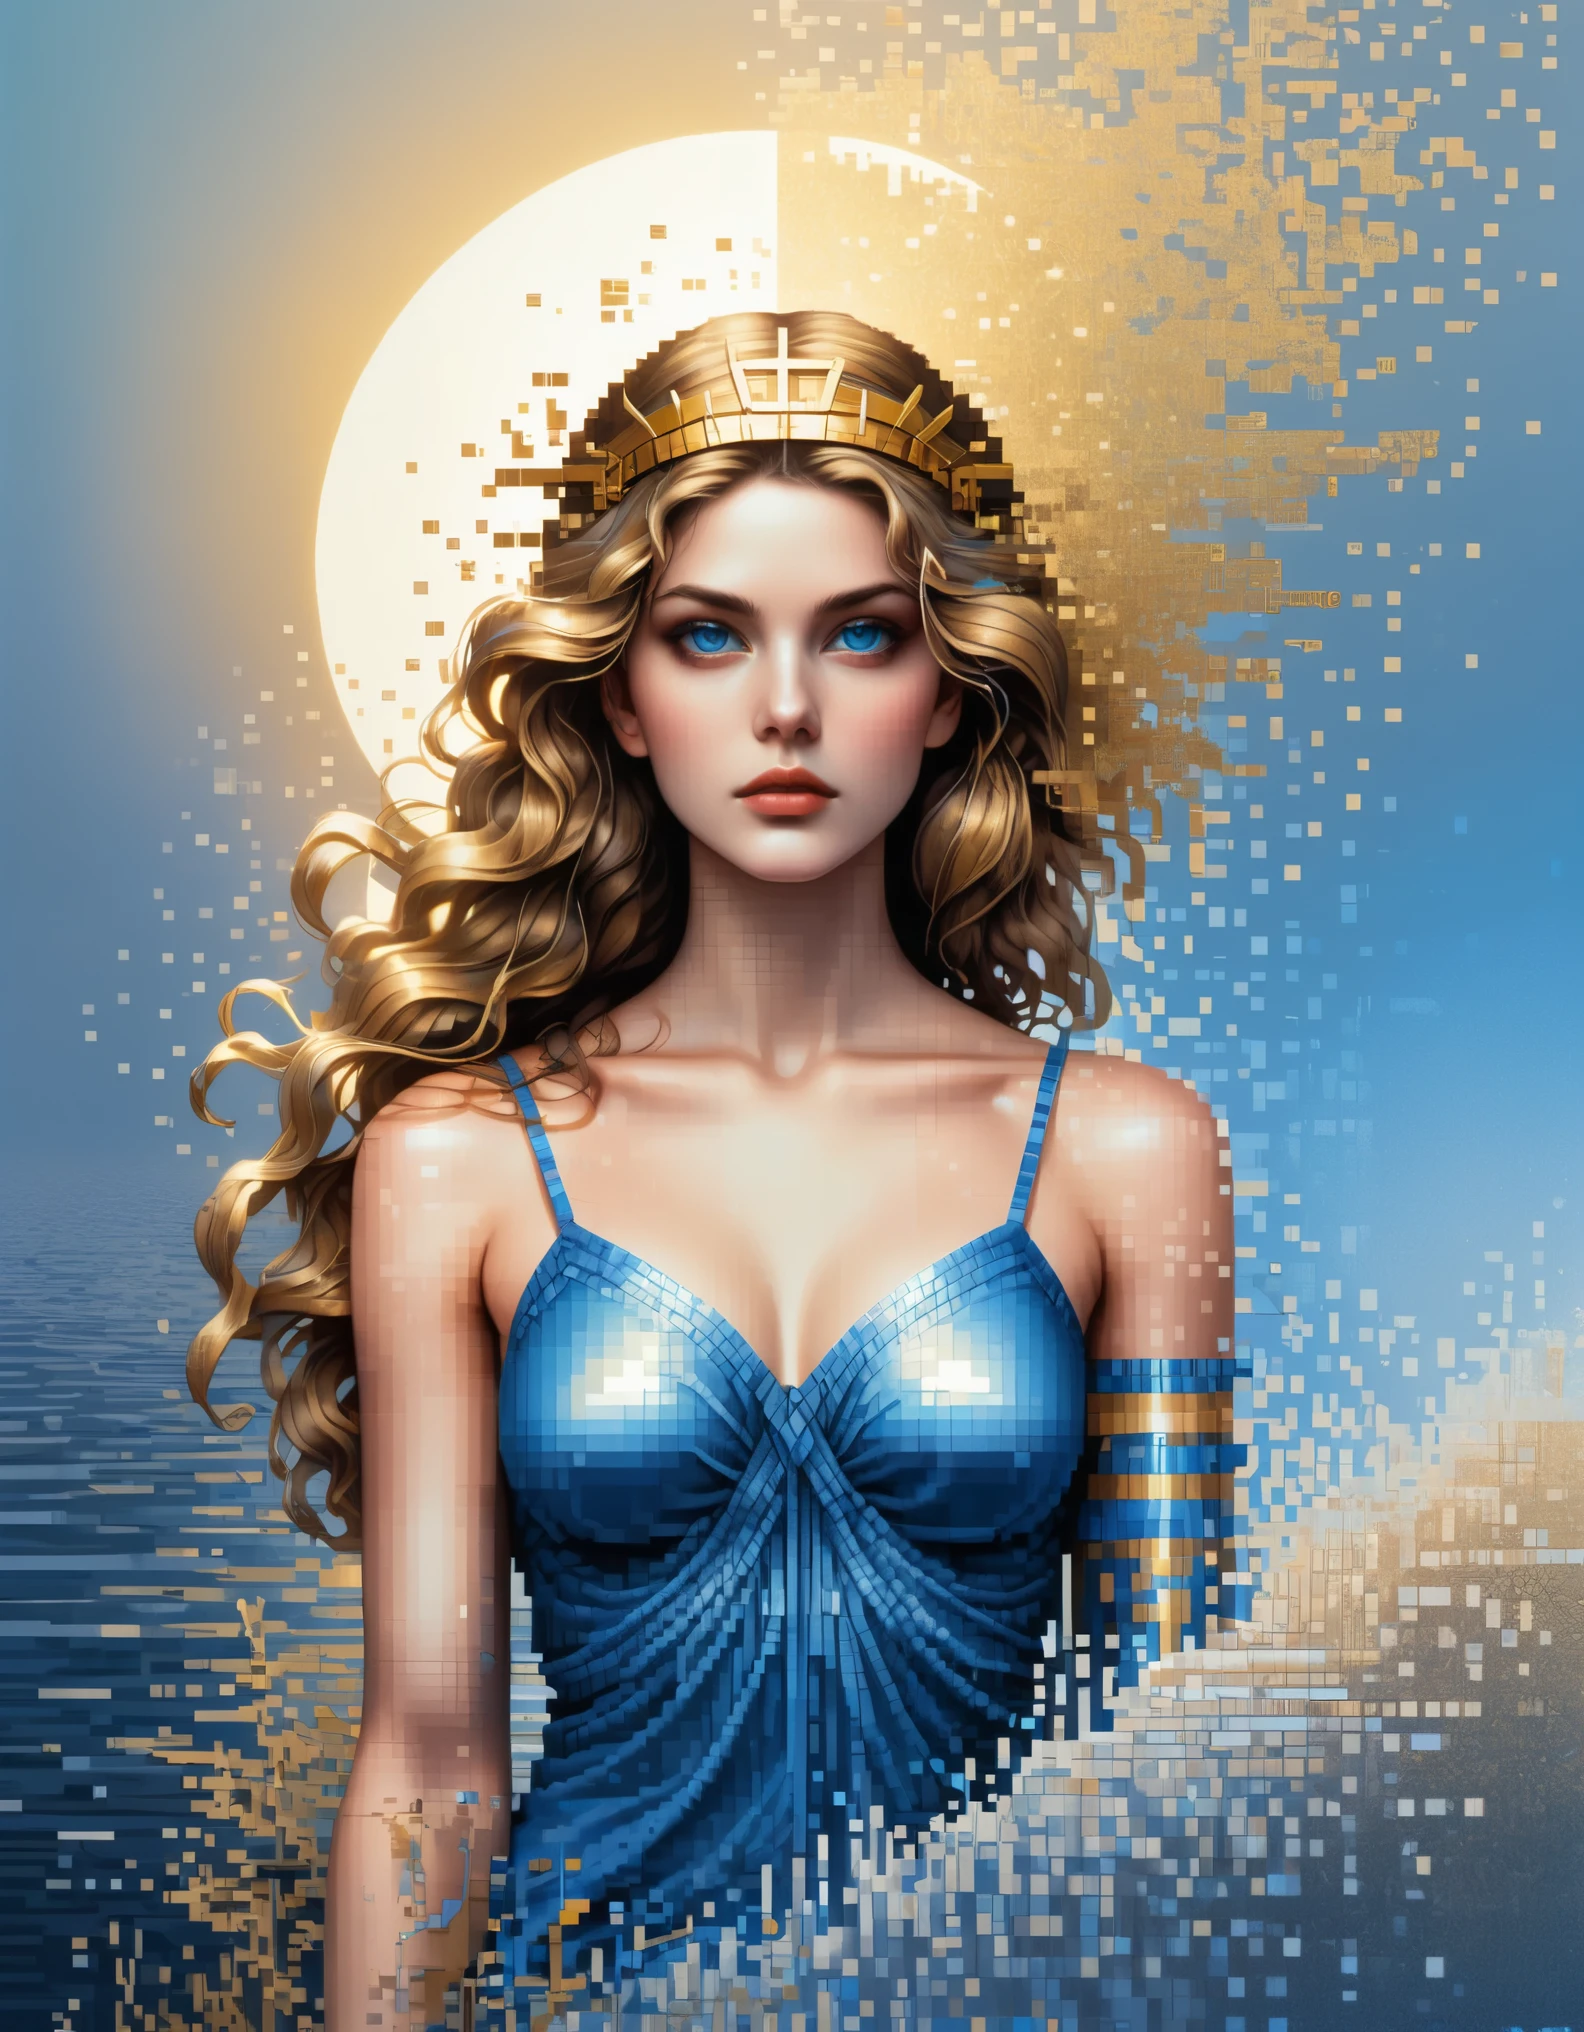 像素艺术,采用阿波罗尼亚圣克莱尔 (Apollonia Saintclair) 风格, 美丽的细节，美丽的女神雅典娜在蓝色渐变色的溶解像素中，（全身），异常美丽的蓝眼睛，逐渐分解，金色阳光照进来，水中的部分反射，